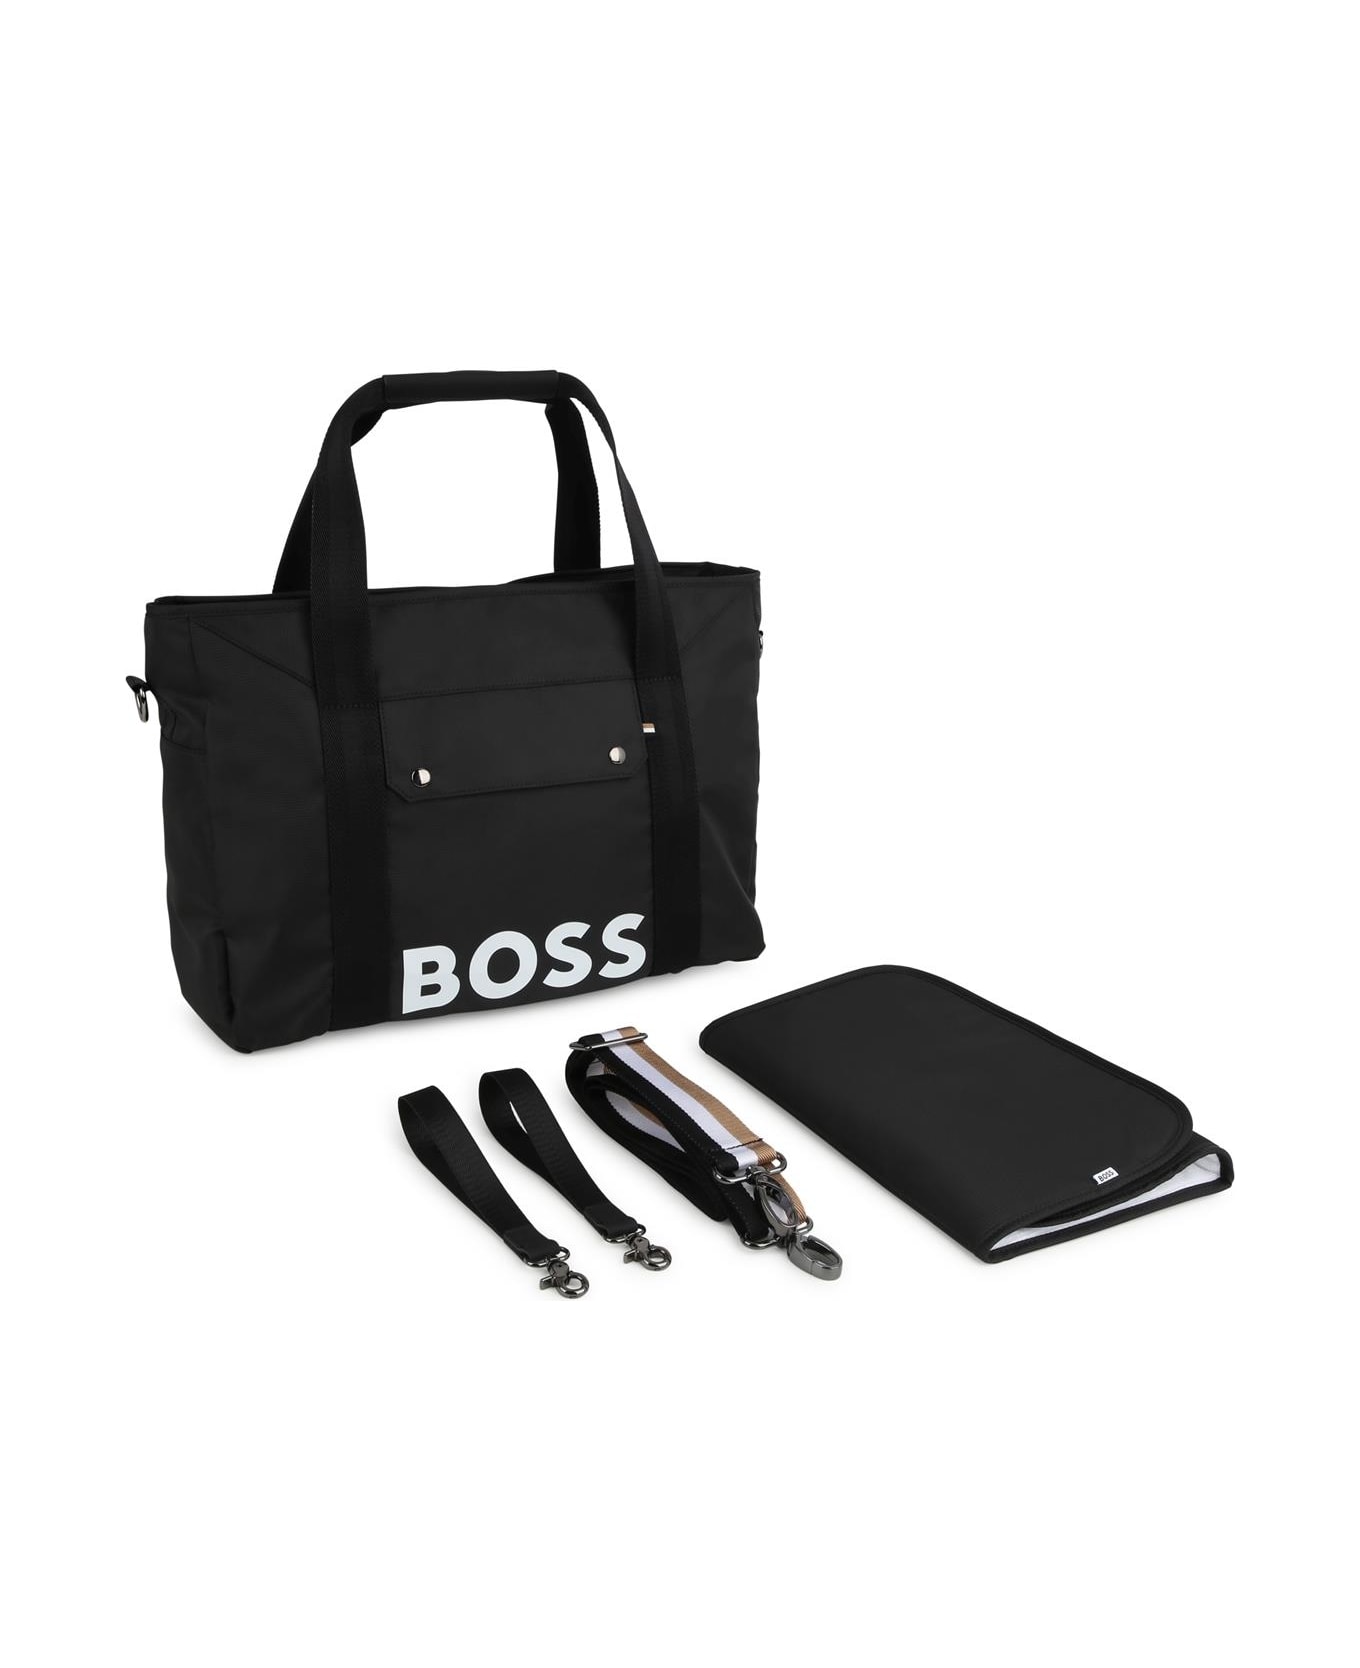 Hugo Boss Changing Bag With Print - Black